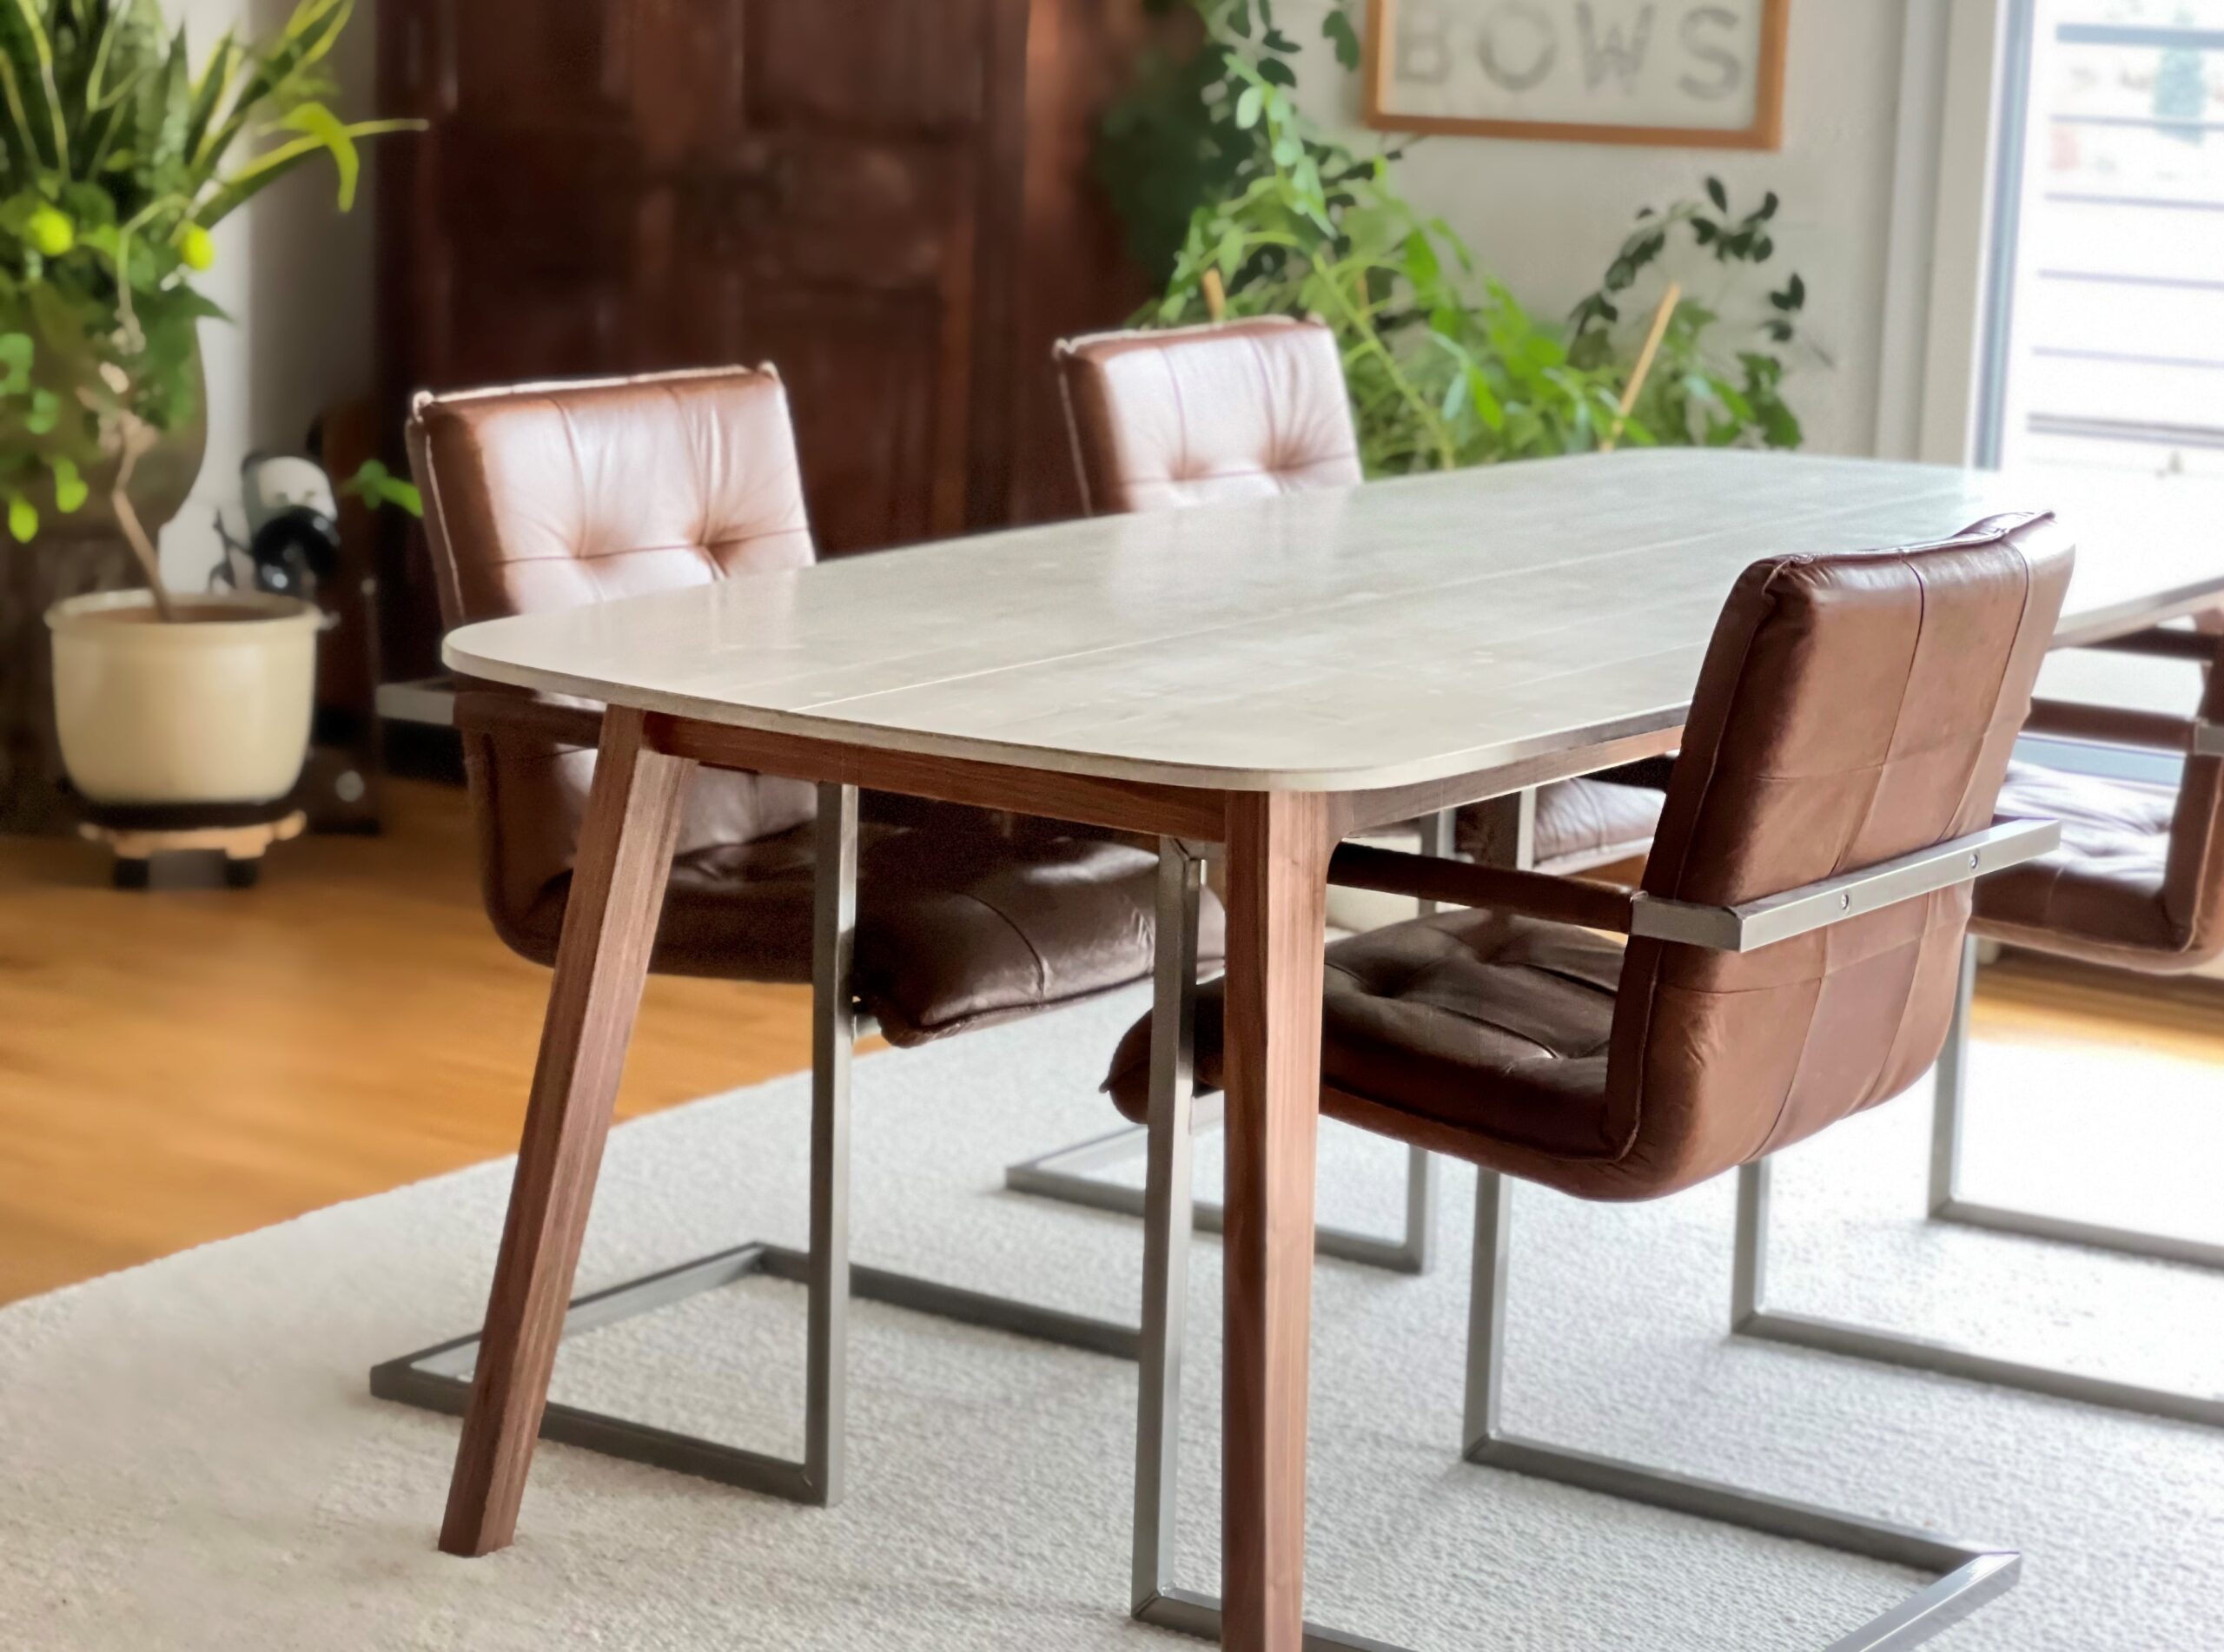 Tisch mit Betontischplatte und Holzbeinen. Dazu Lederstühle